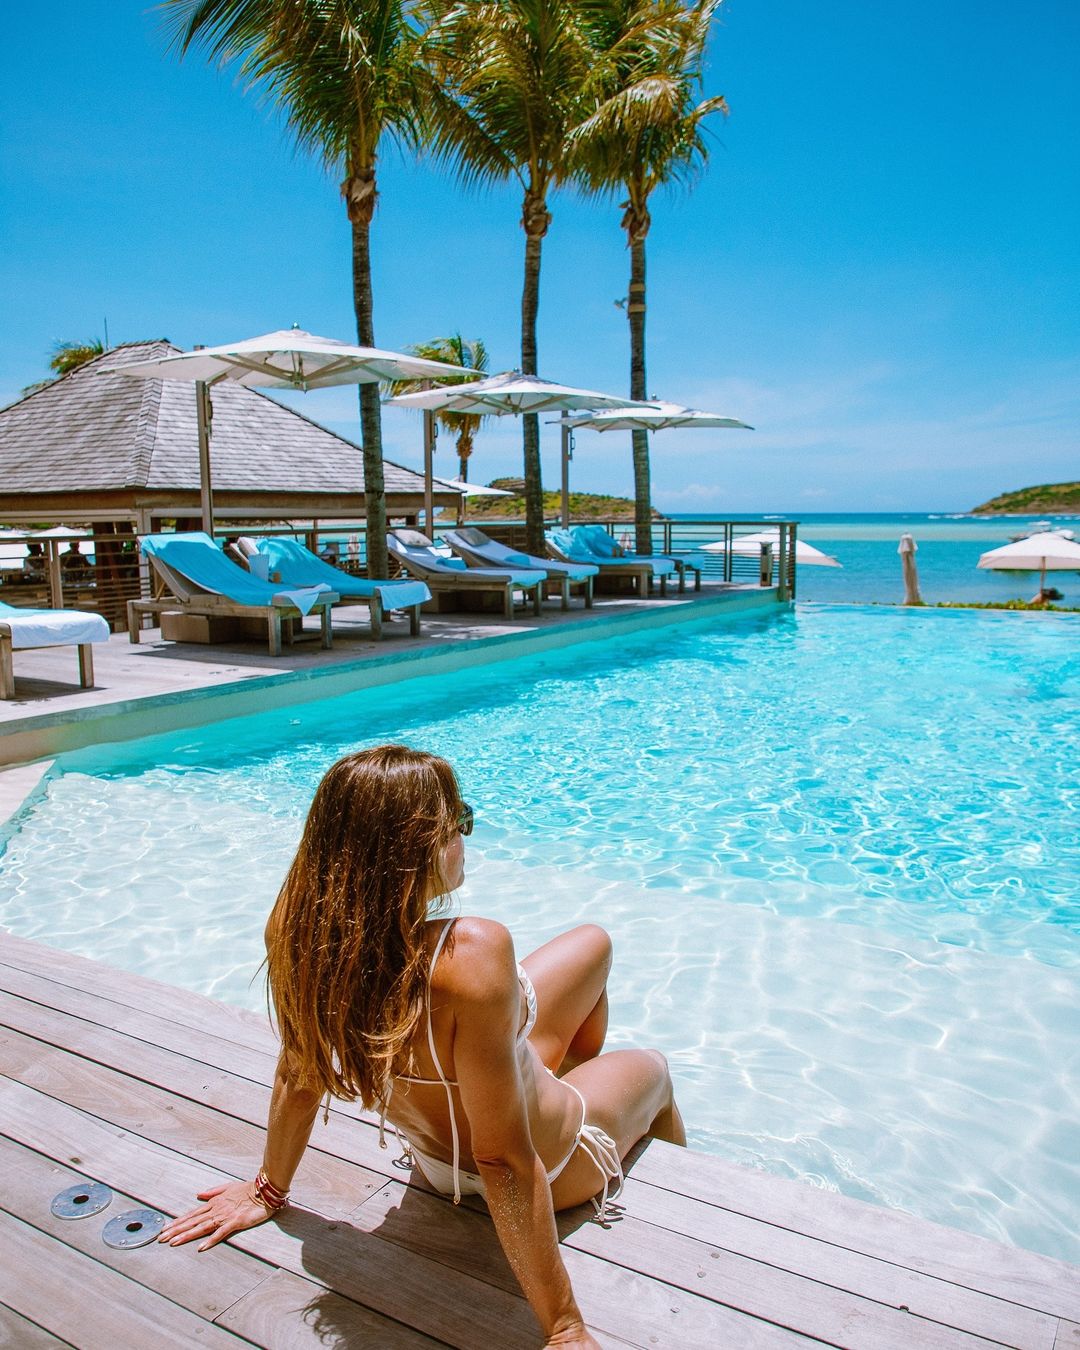 Cicarelli apareceu à beira de uma piscina com vista para o mar Reprodução/Instagram